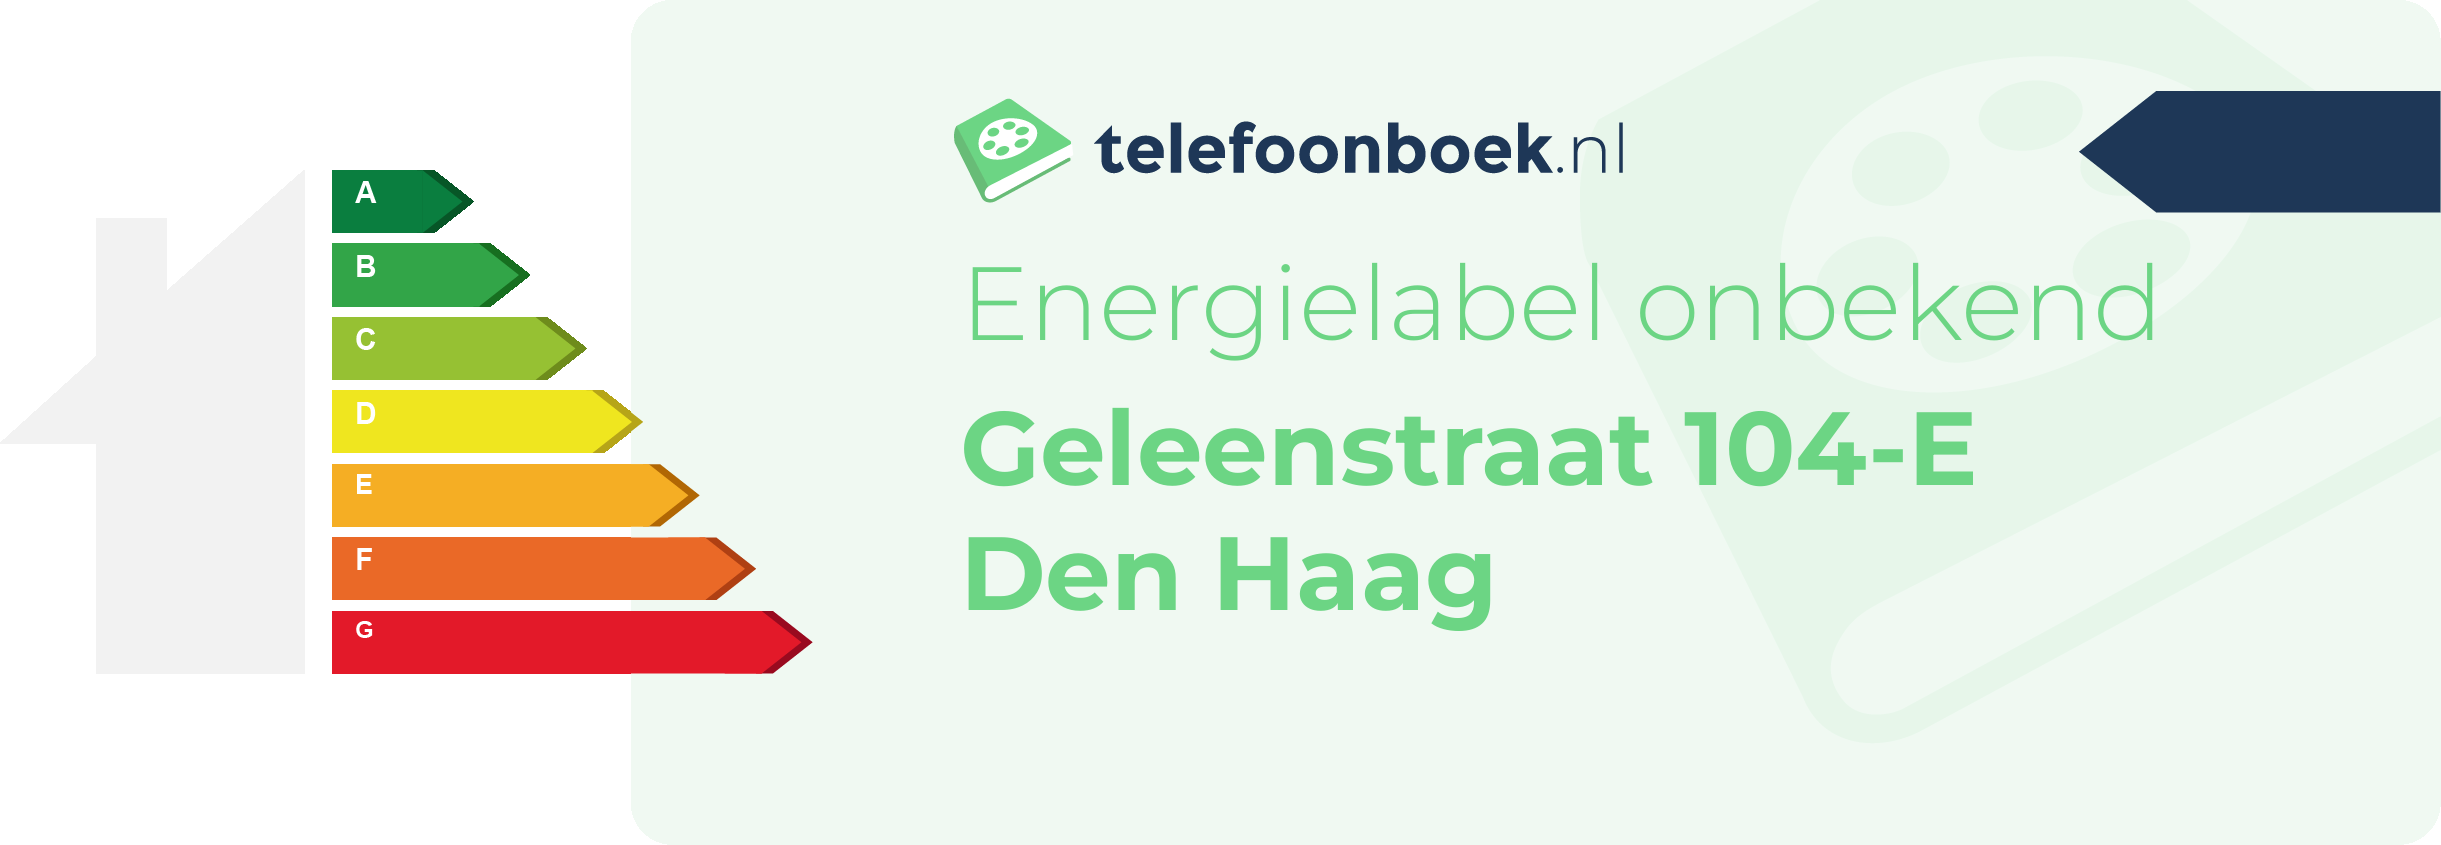 Energielabel Geleenstraat 104-E Den Haag